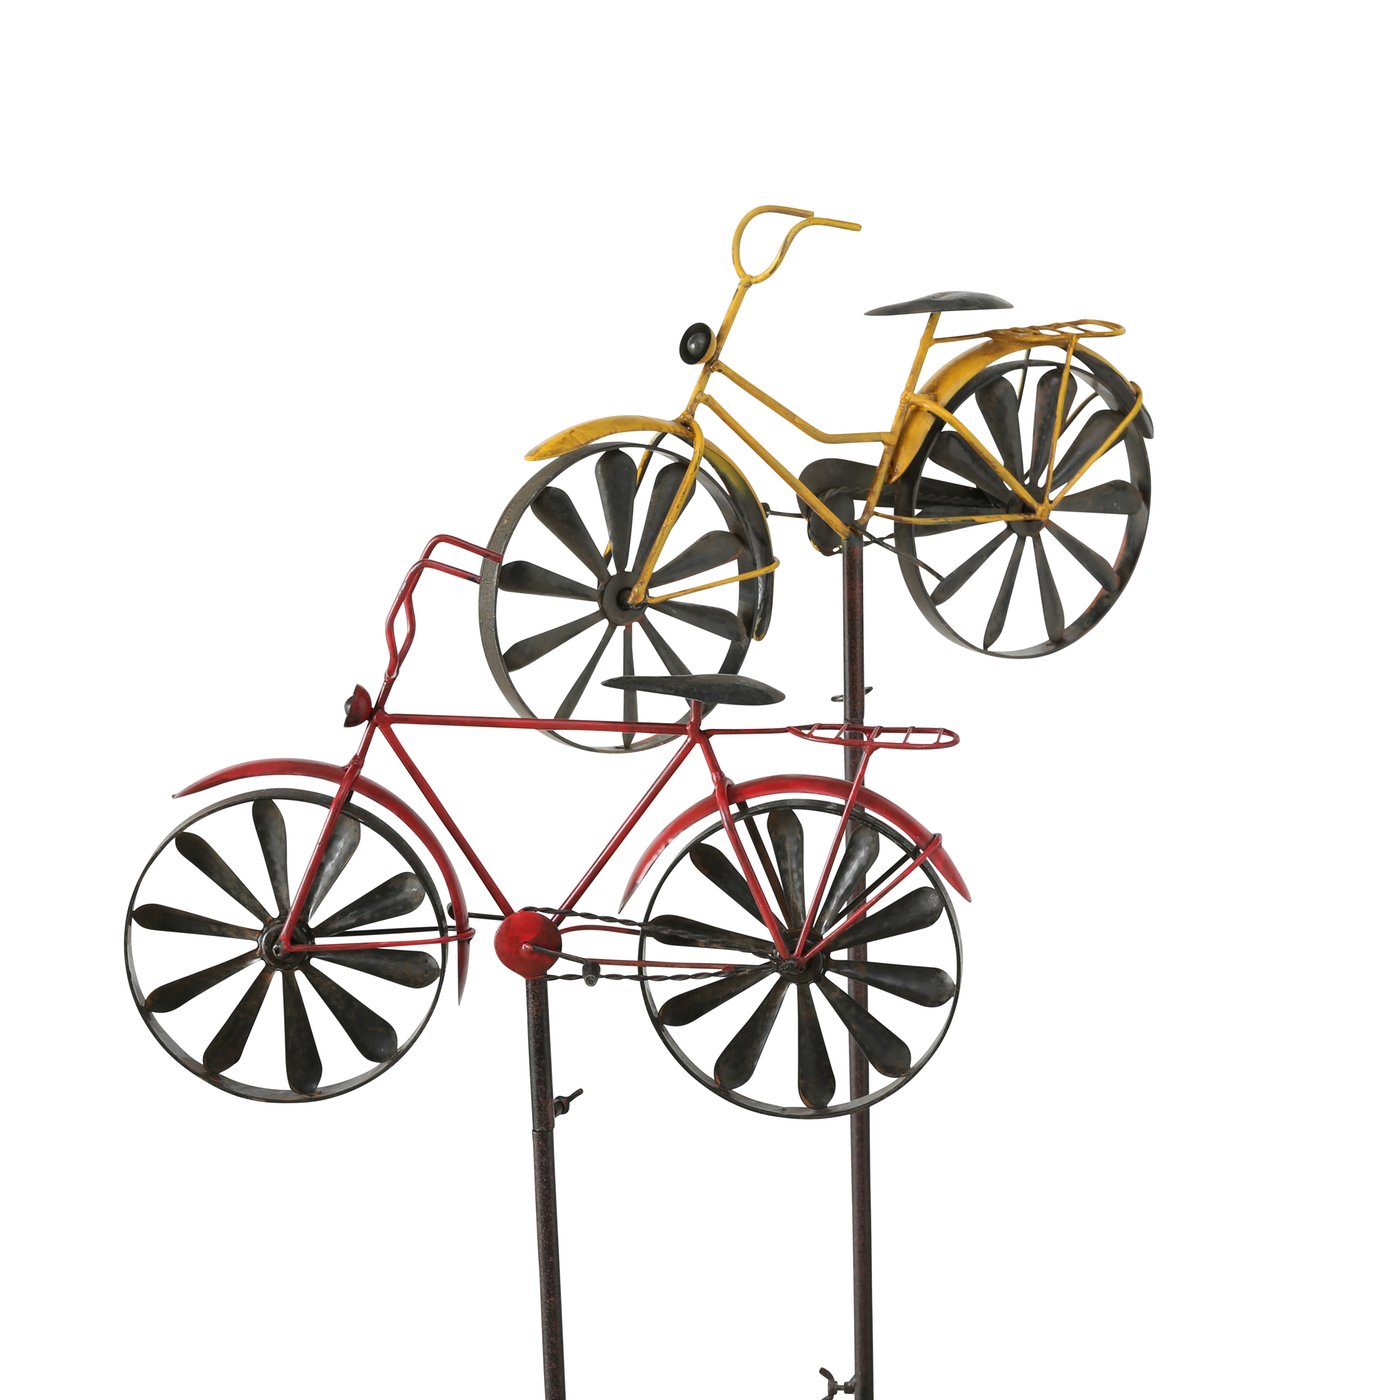 Metall Gartenstecker Gartenstab Fahrrad Rad gelb rot, 4504500, 4020606910011